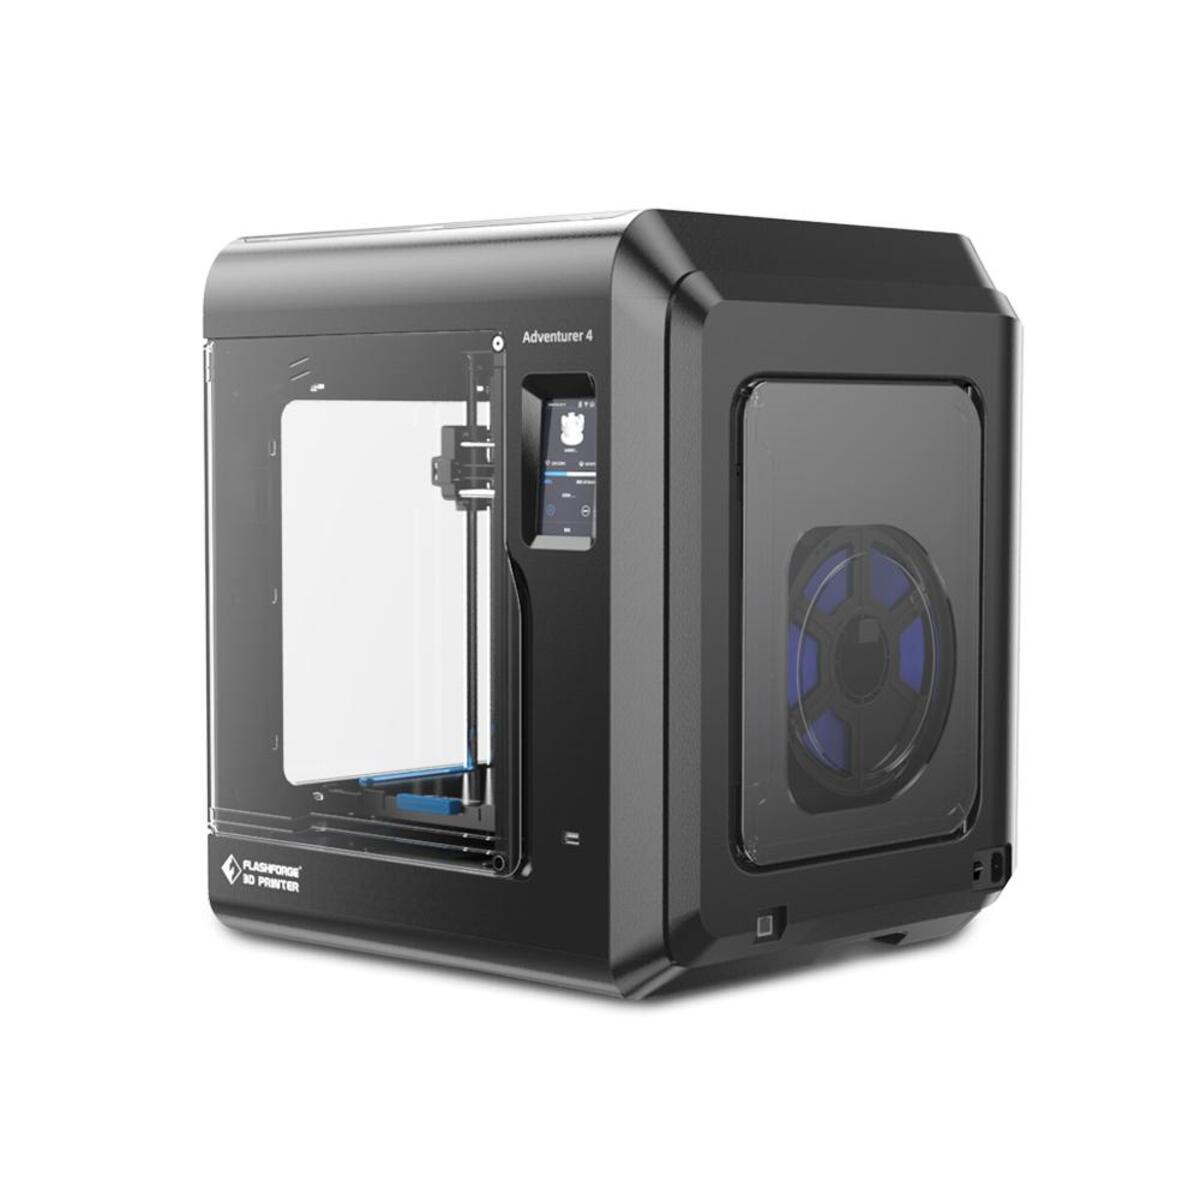 FLASCHFORGE Adventurer 4 3D 3D printer Drucker FDM